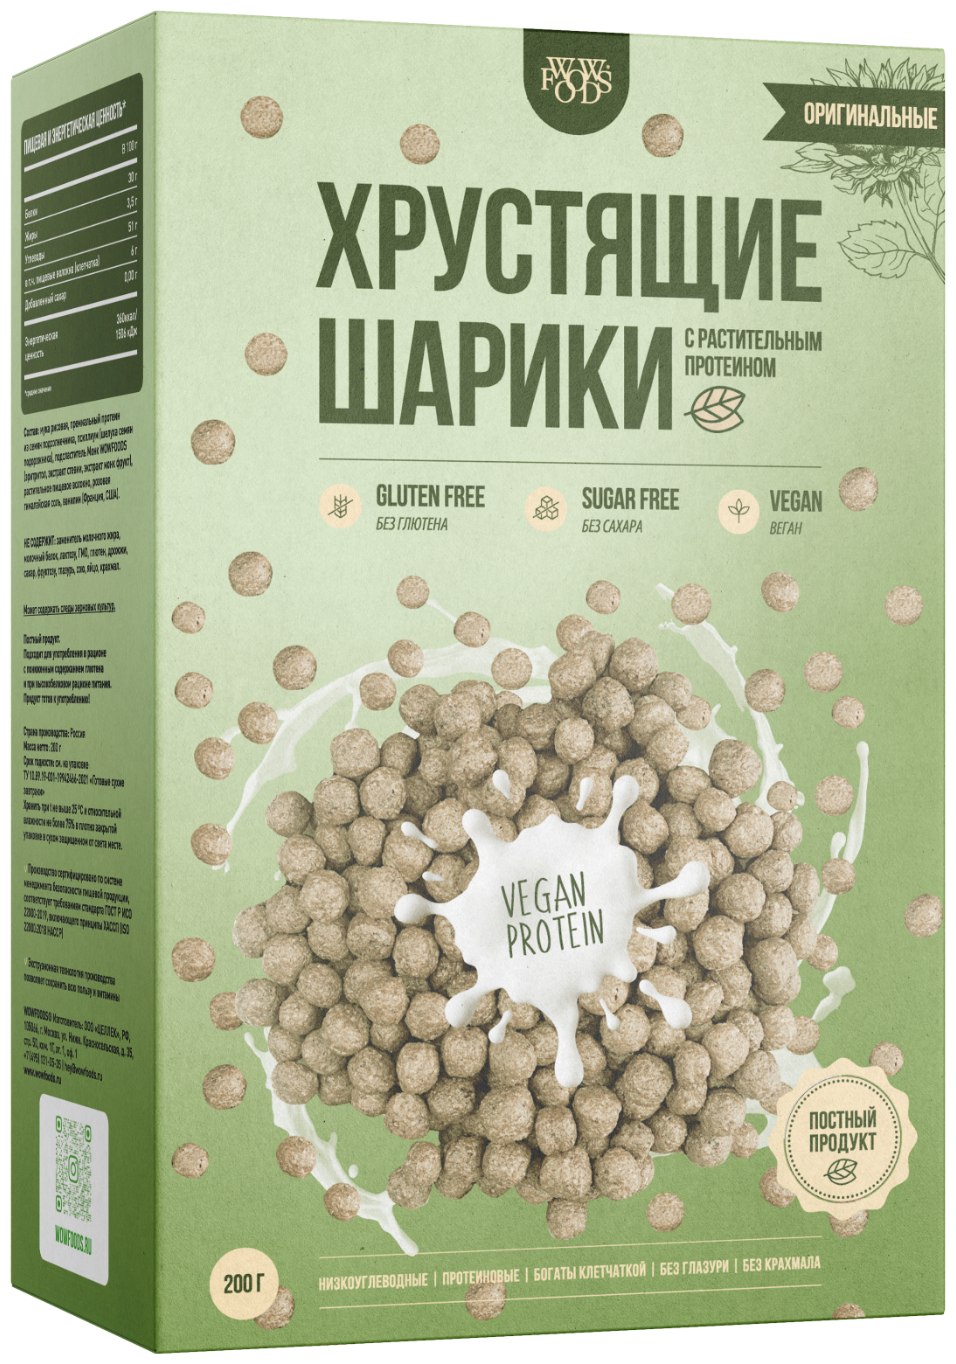 Хрустящие шарики натуральные с растительным протеином без сахара, без глютена, веган, 200 г - фотография № 1